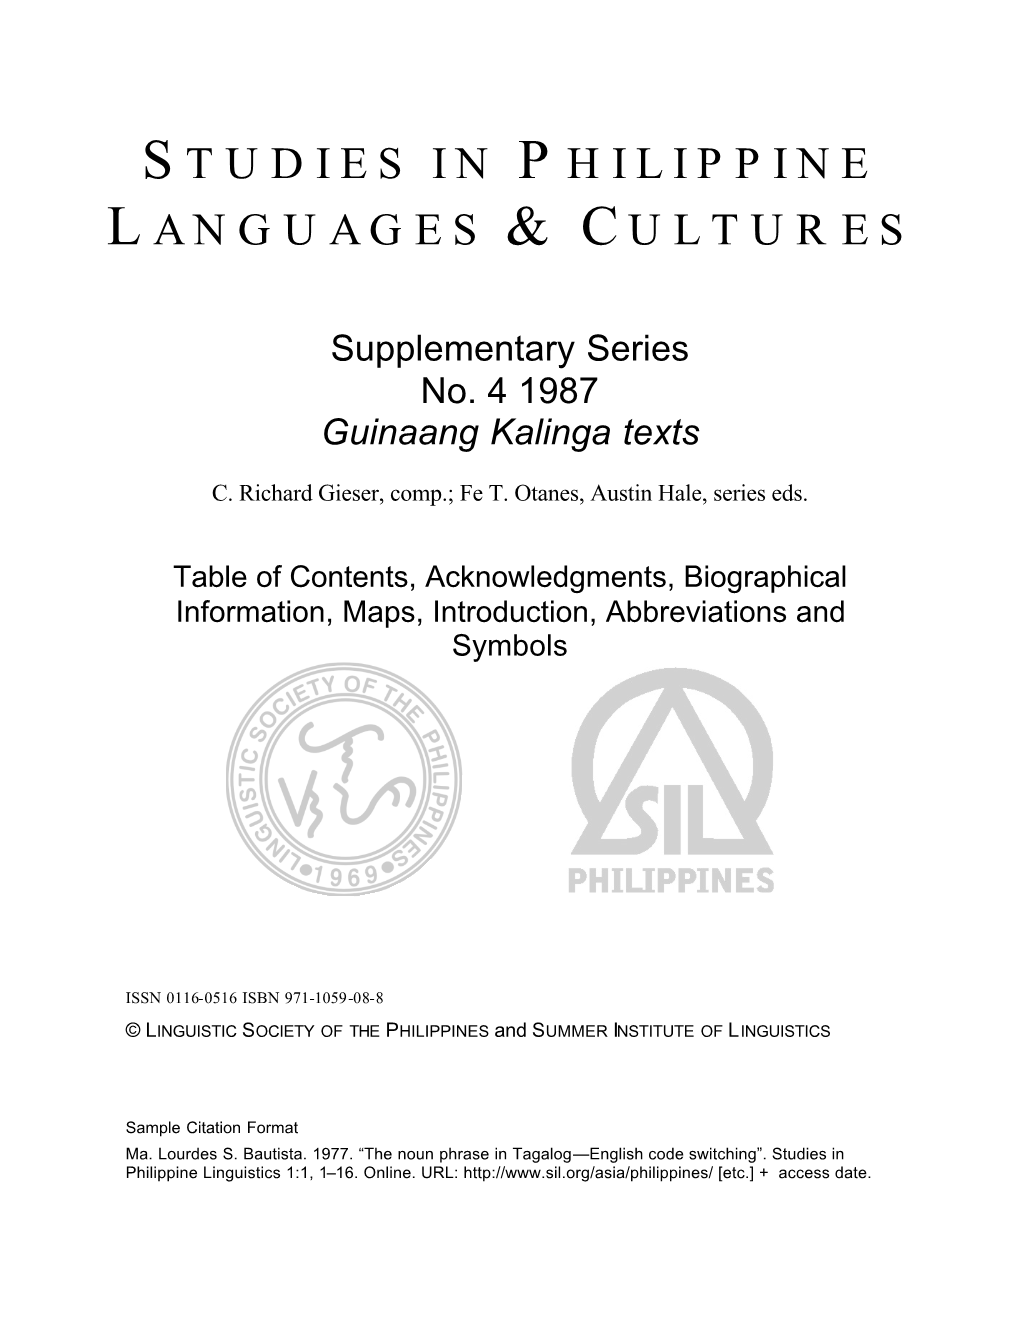 Studies in Philippine Languages & Cultures